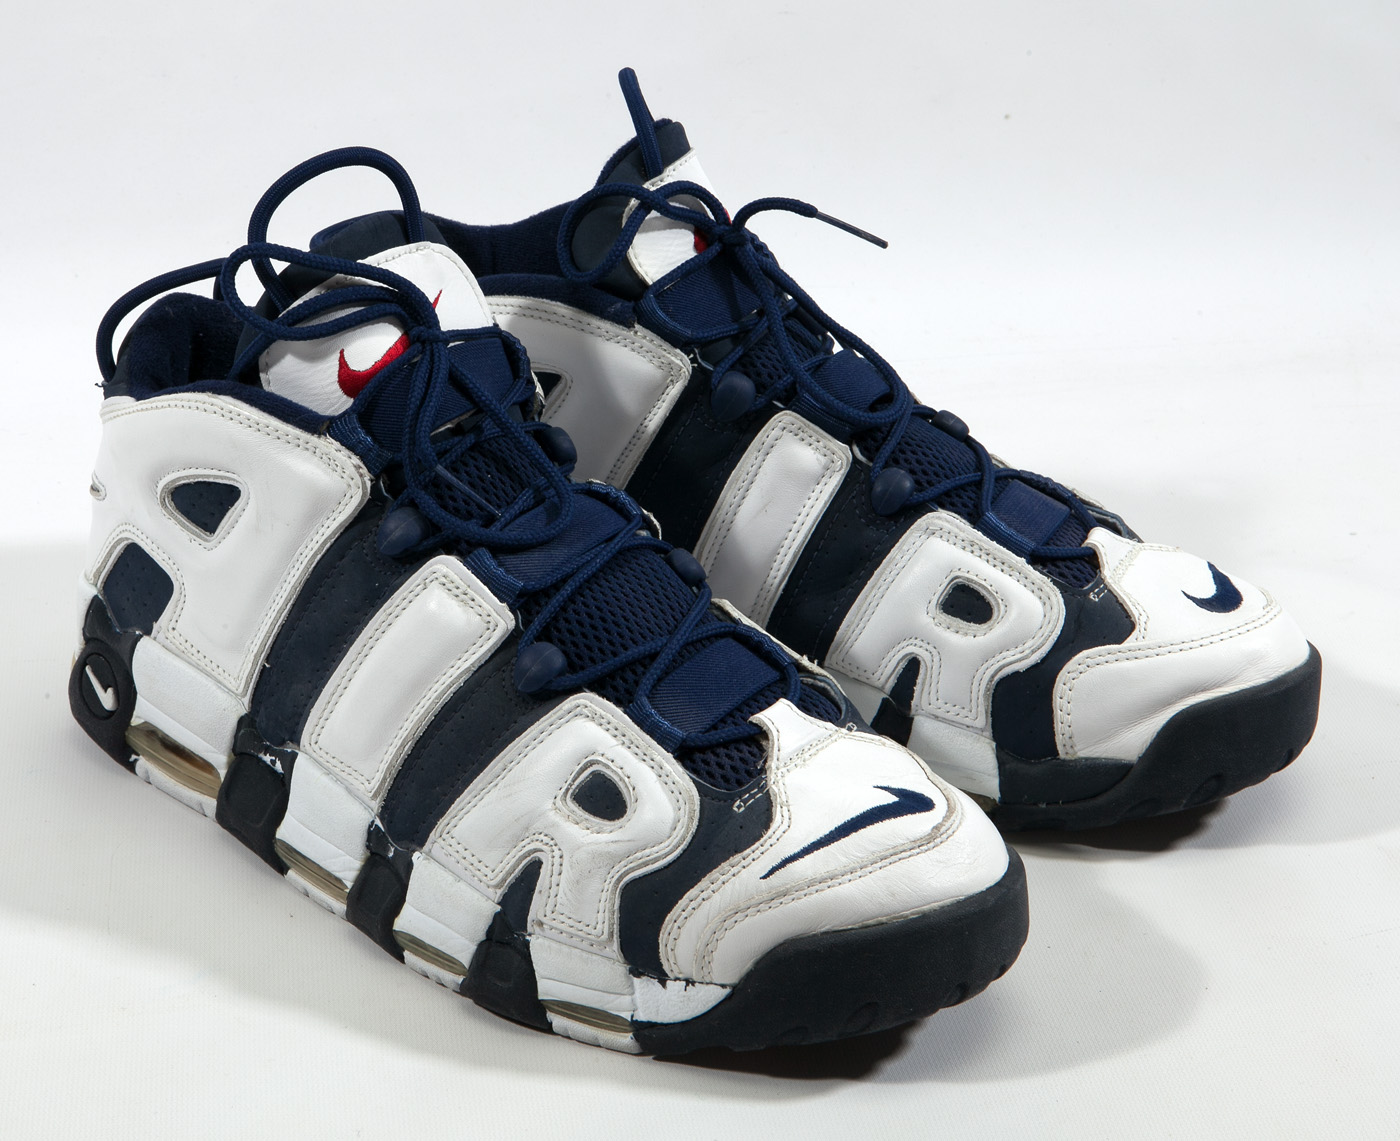 scottie pippen shoes 1996